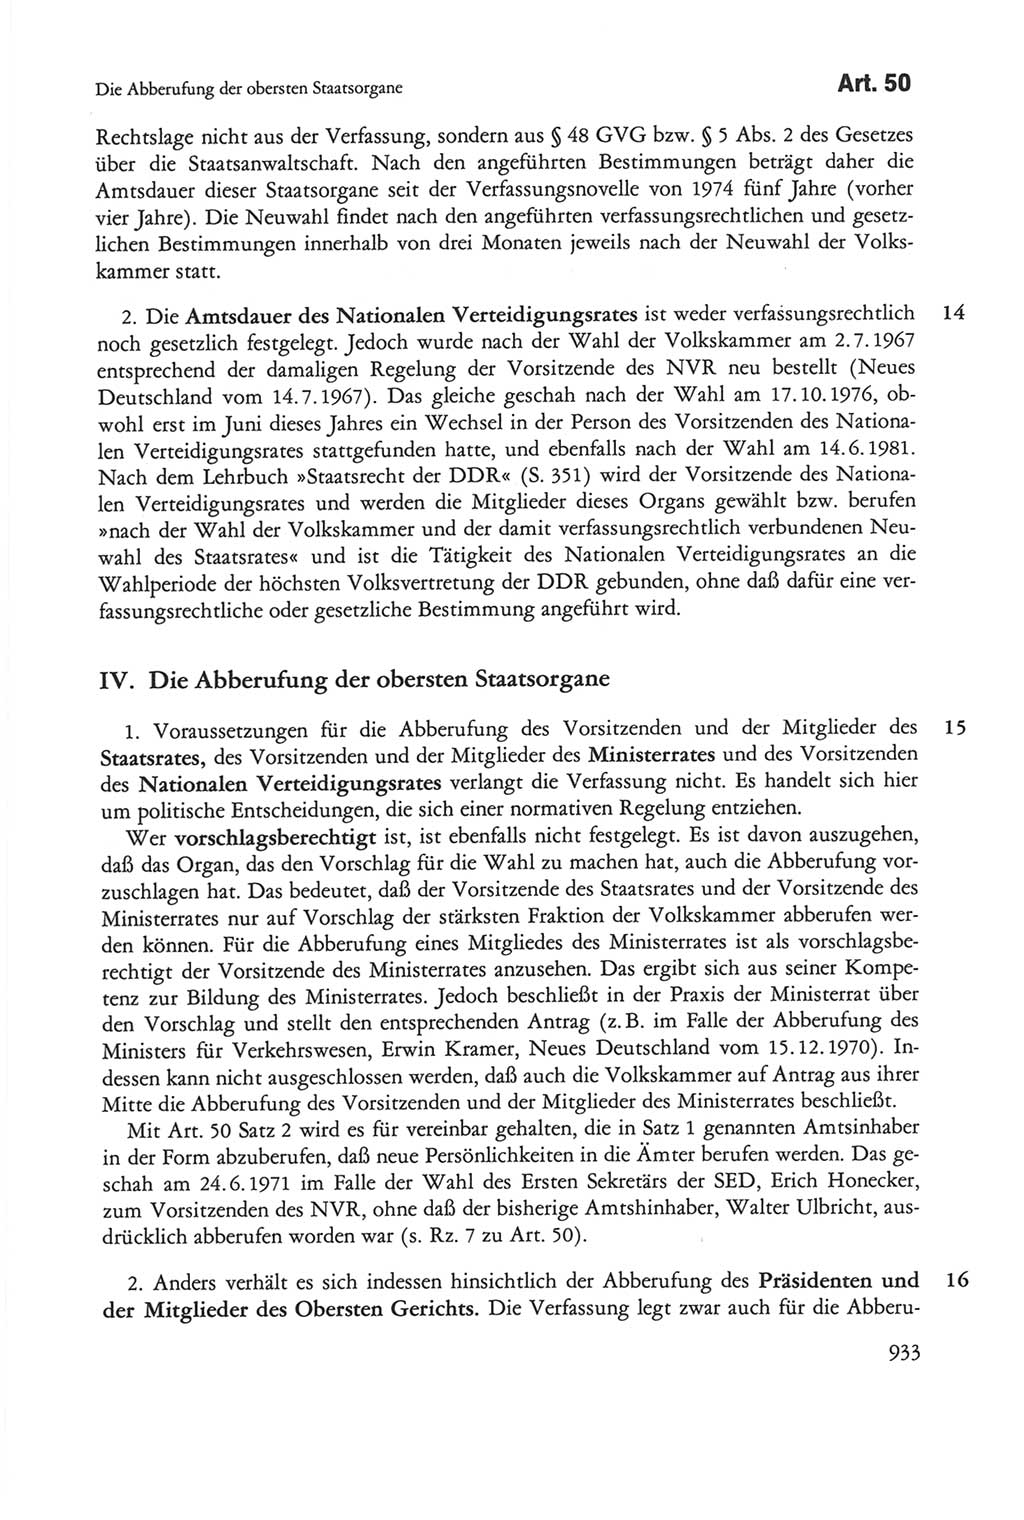 Die sozialistische Verfassung der Deutschen Demokratischen Republik (DDR), Kommentar 1982, Seite 933 (Soz. Verf. DDR Komm. 1982, S. 933)